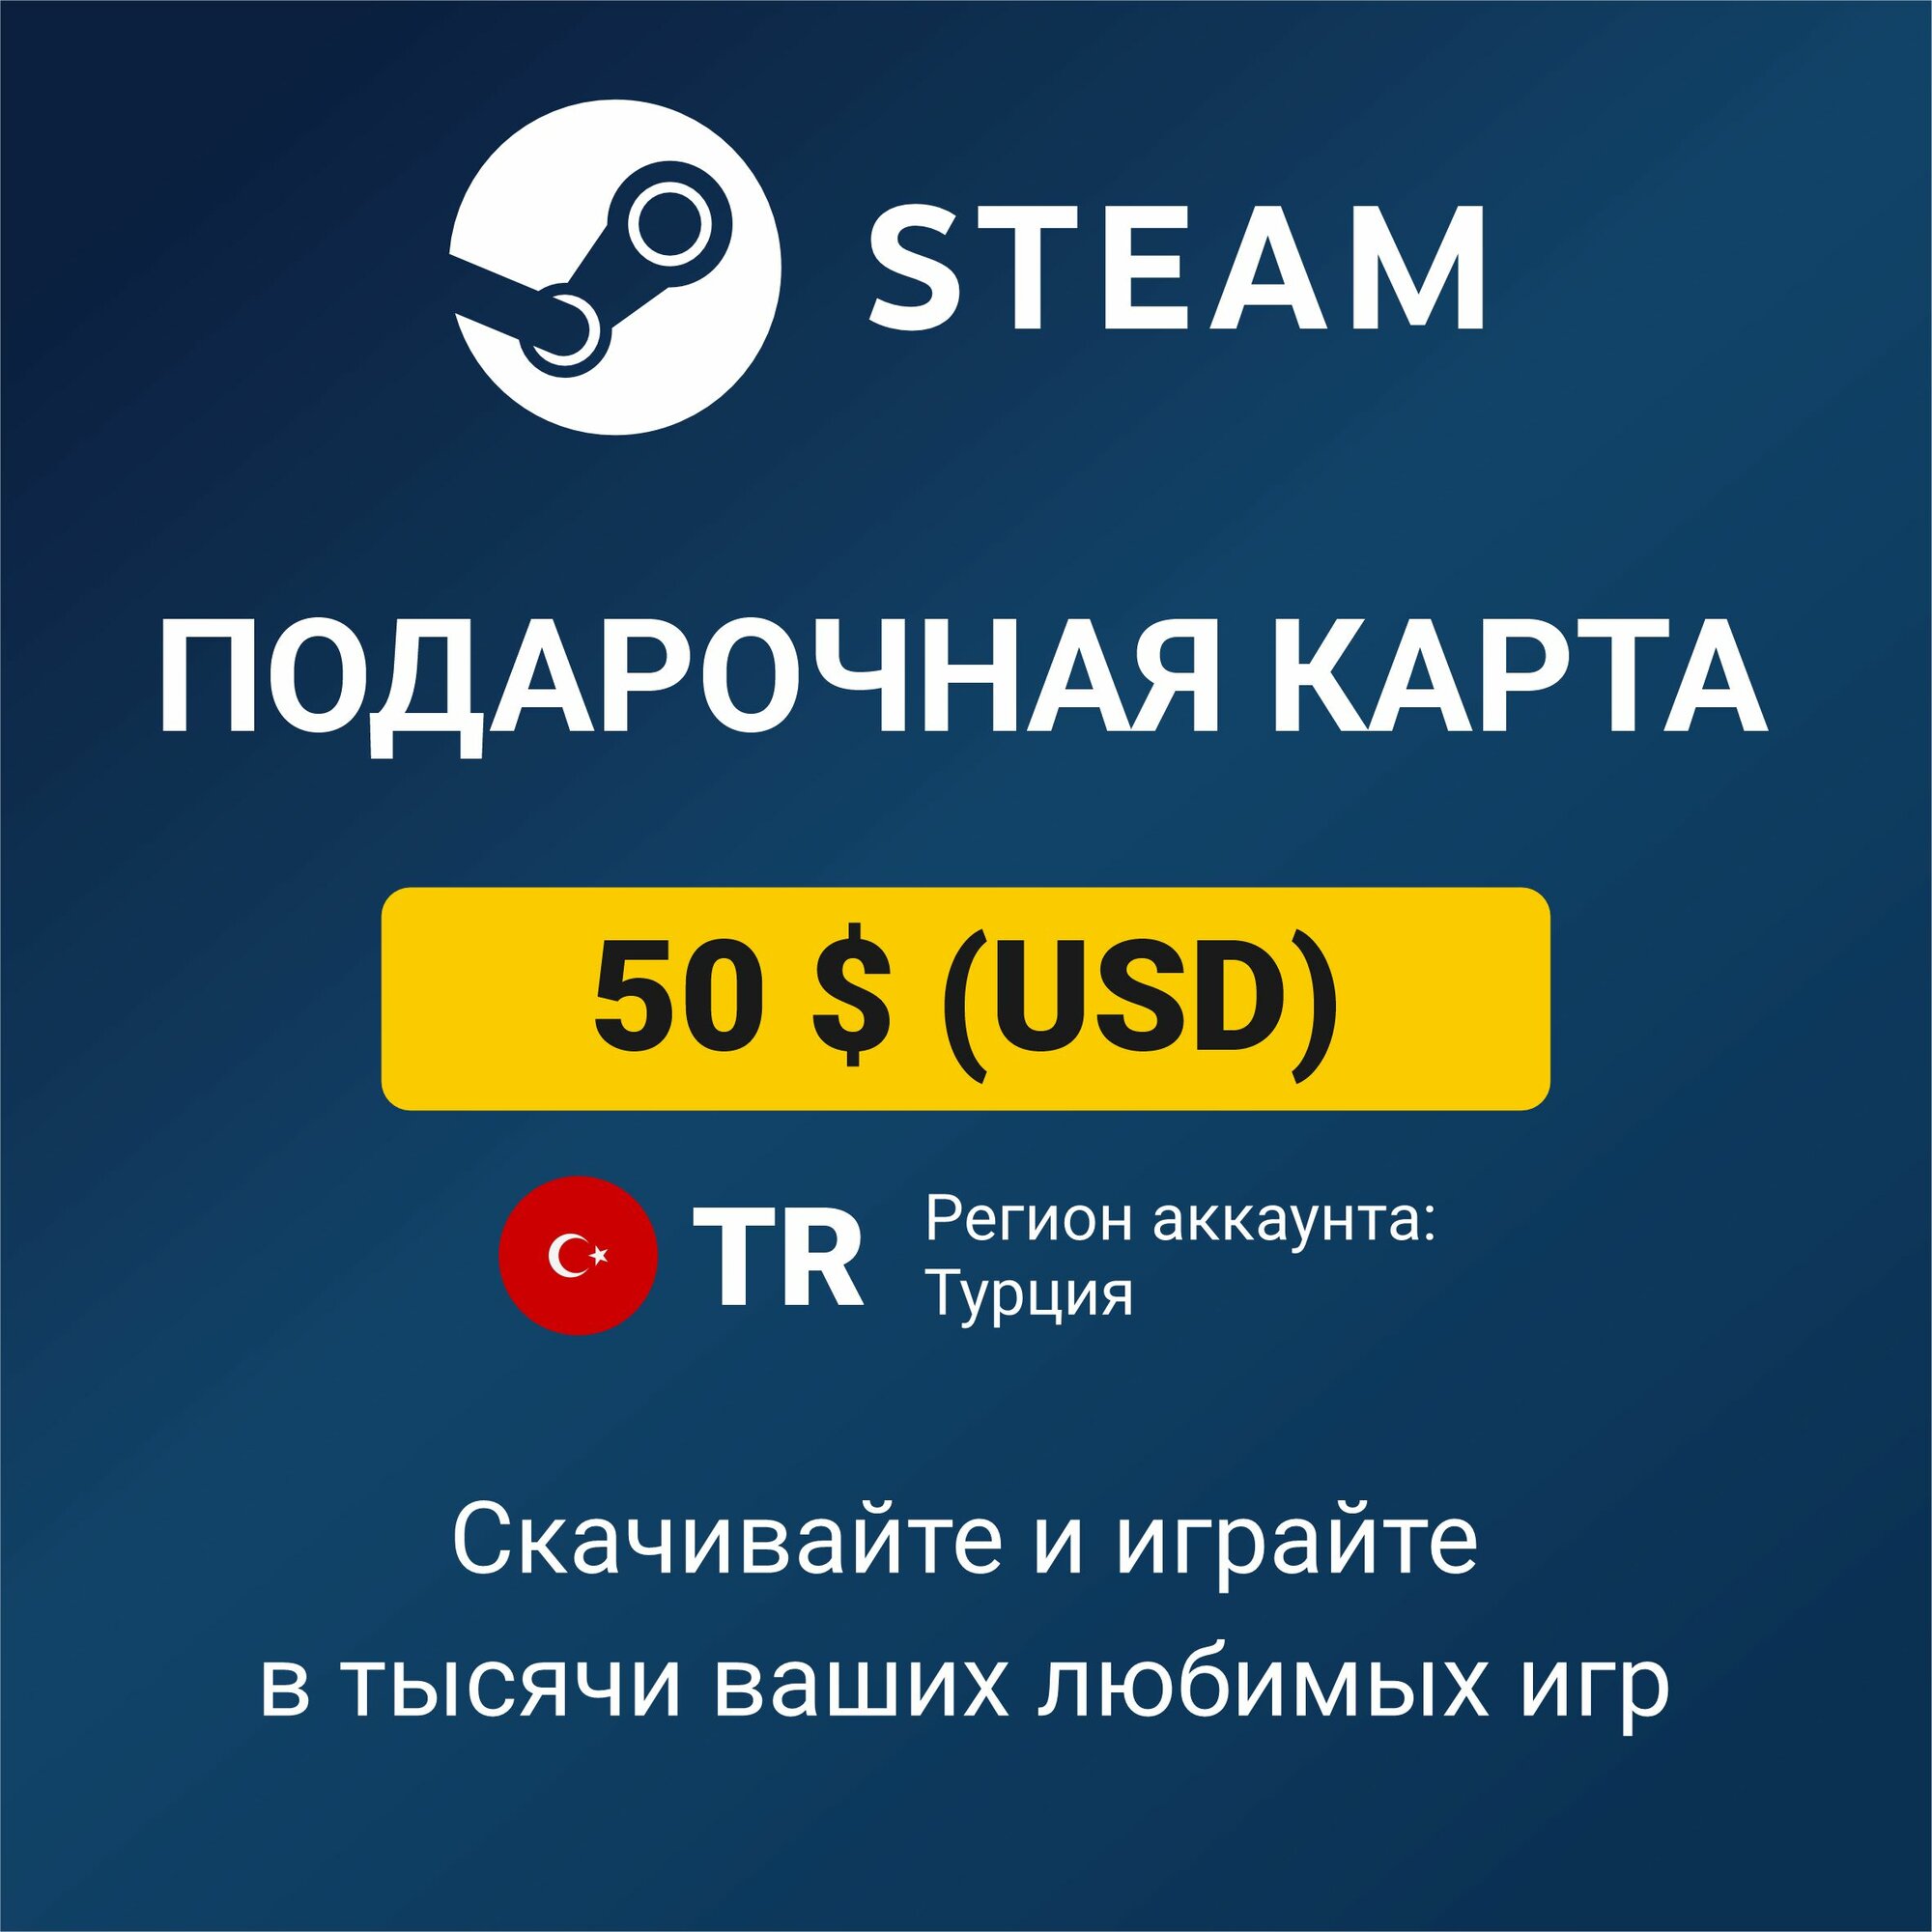 Пополнение кошелька Steam 50 USD (регион аккаунта: Турция), цифровой код активации/подарочная карта